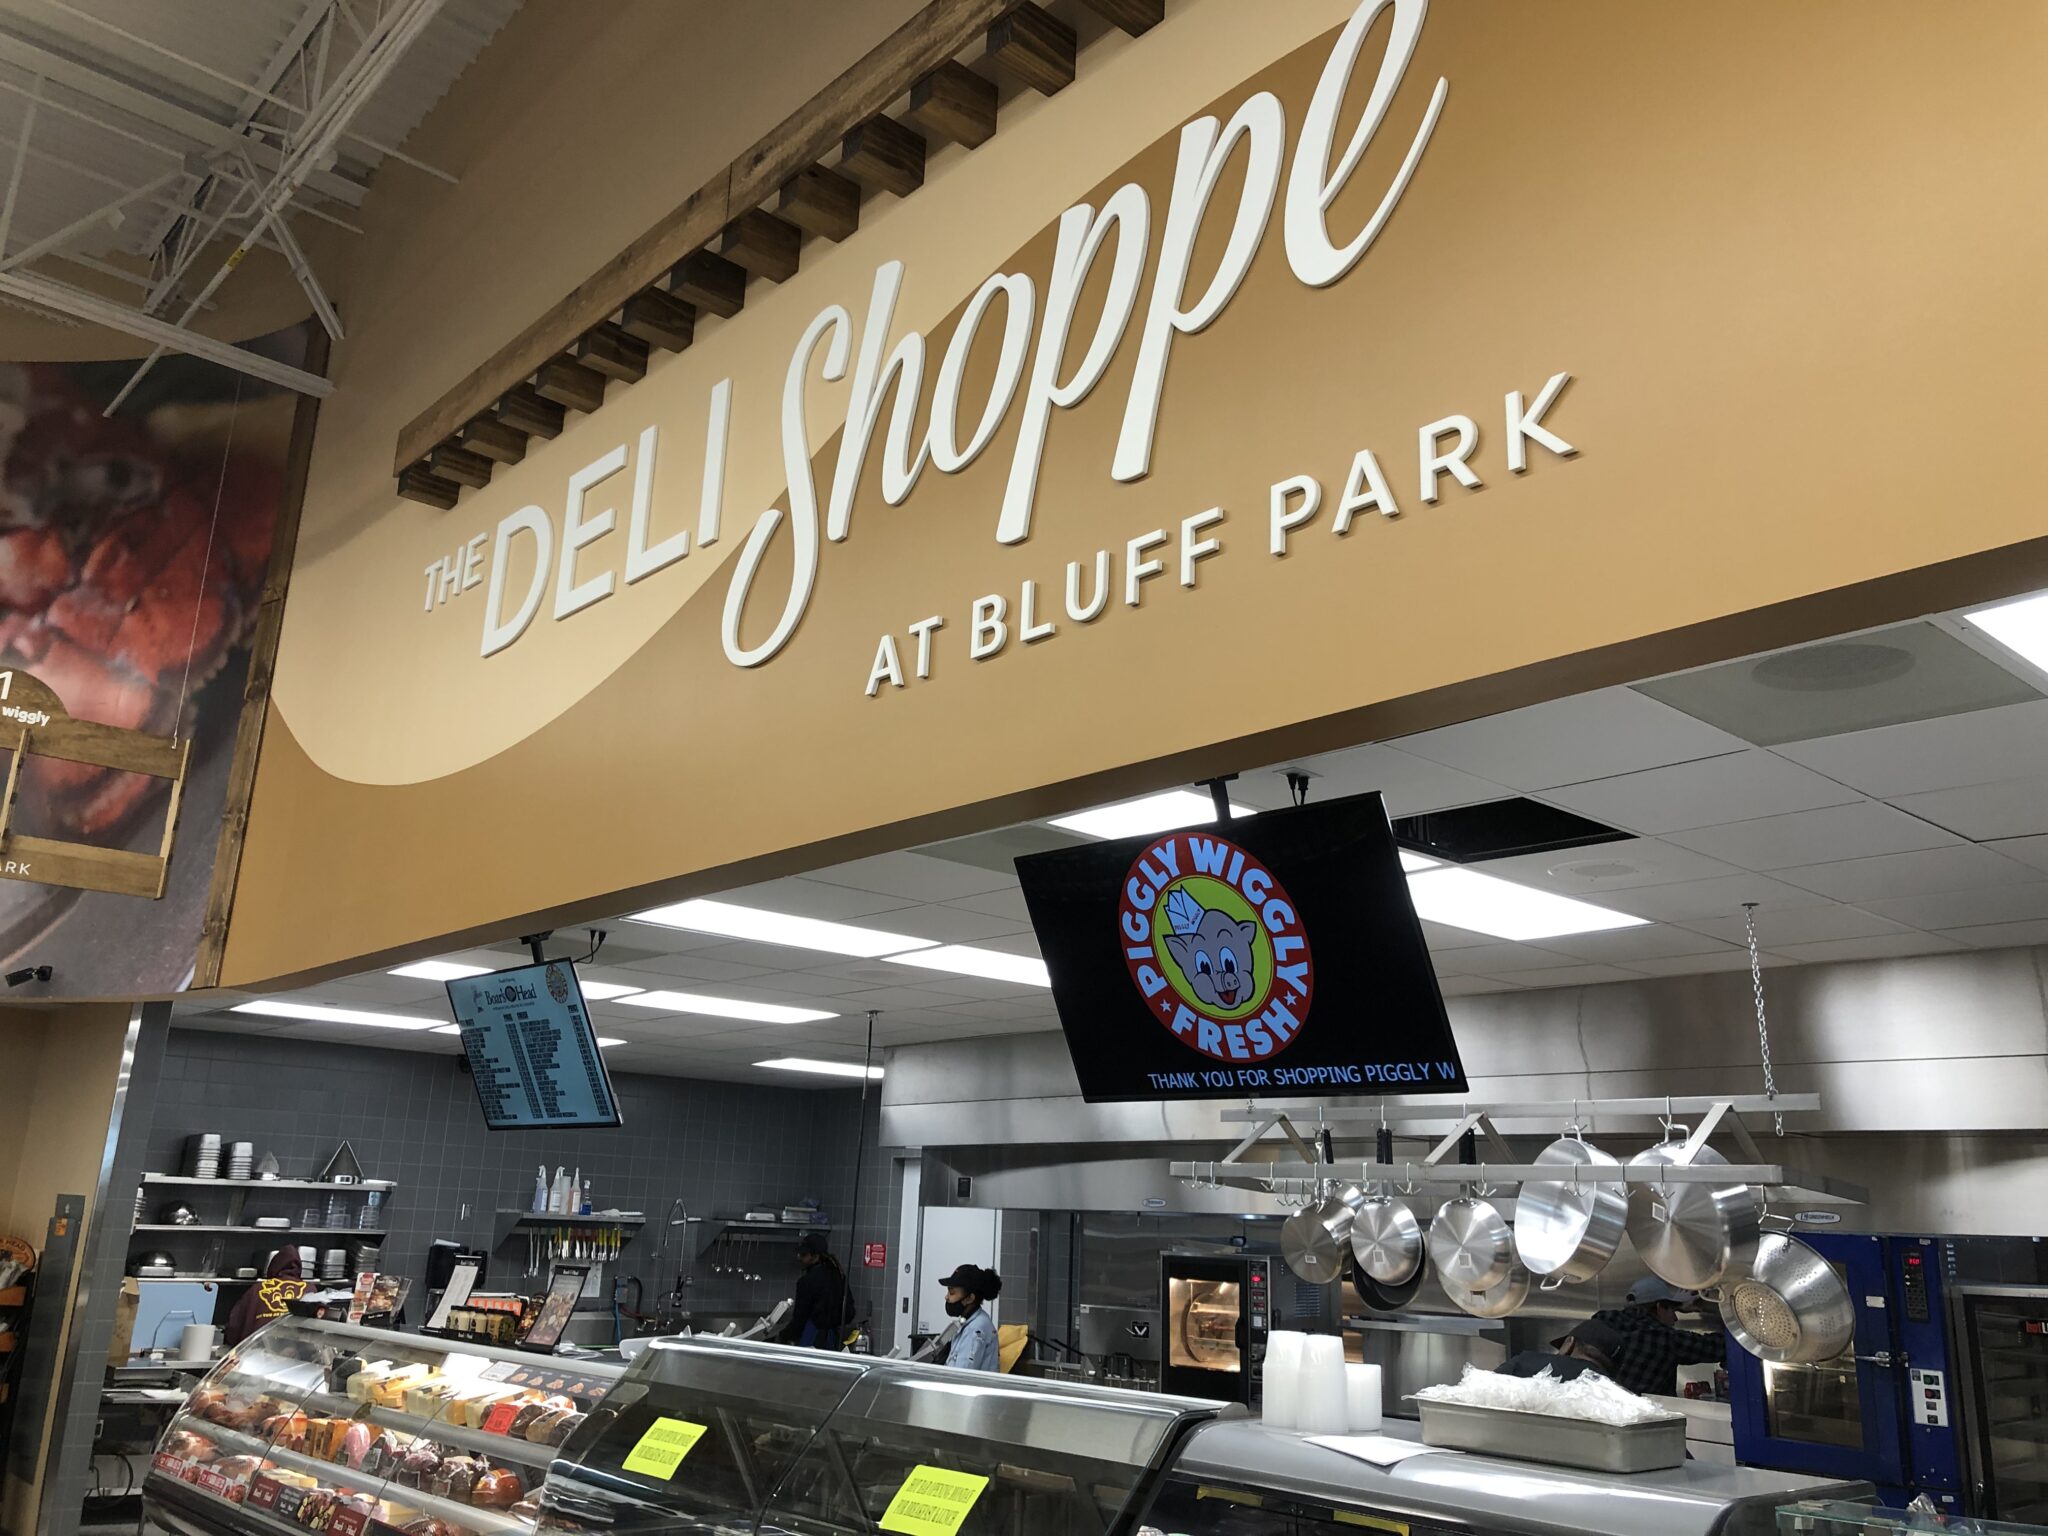 The Deli Shoppe